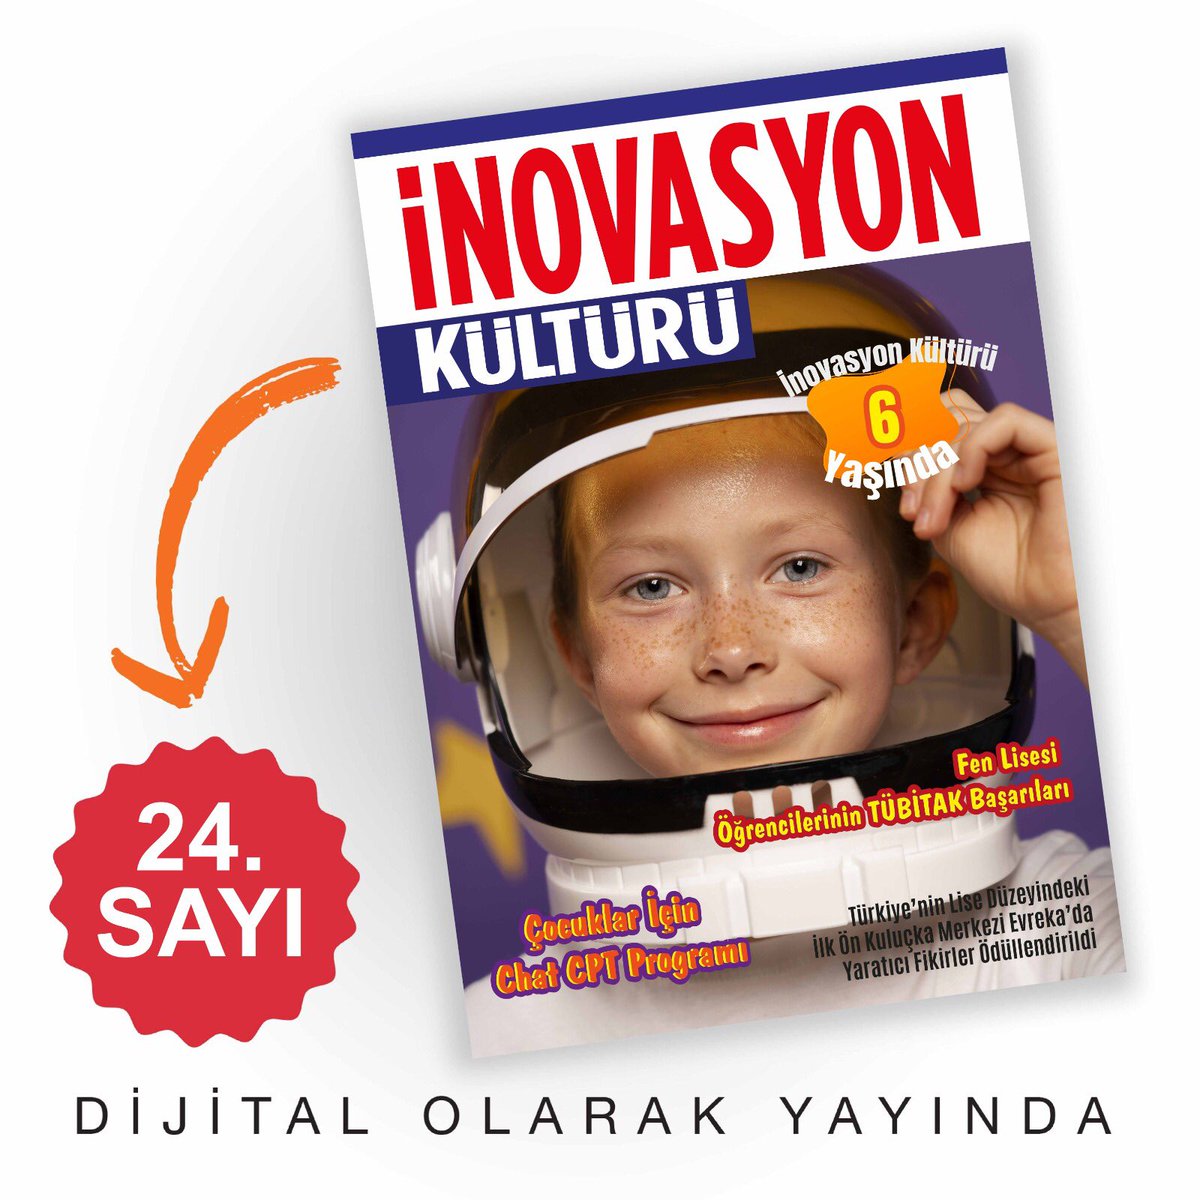 İnovasyon Kültürü Dergimizin 24. sayısı dijitalde yayınlandı! inovasyonkulturu.com